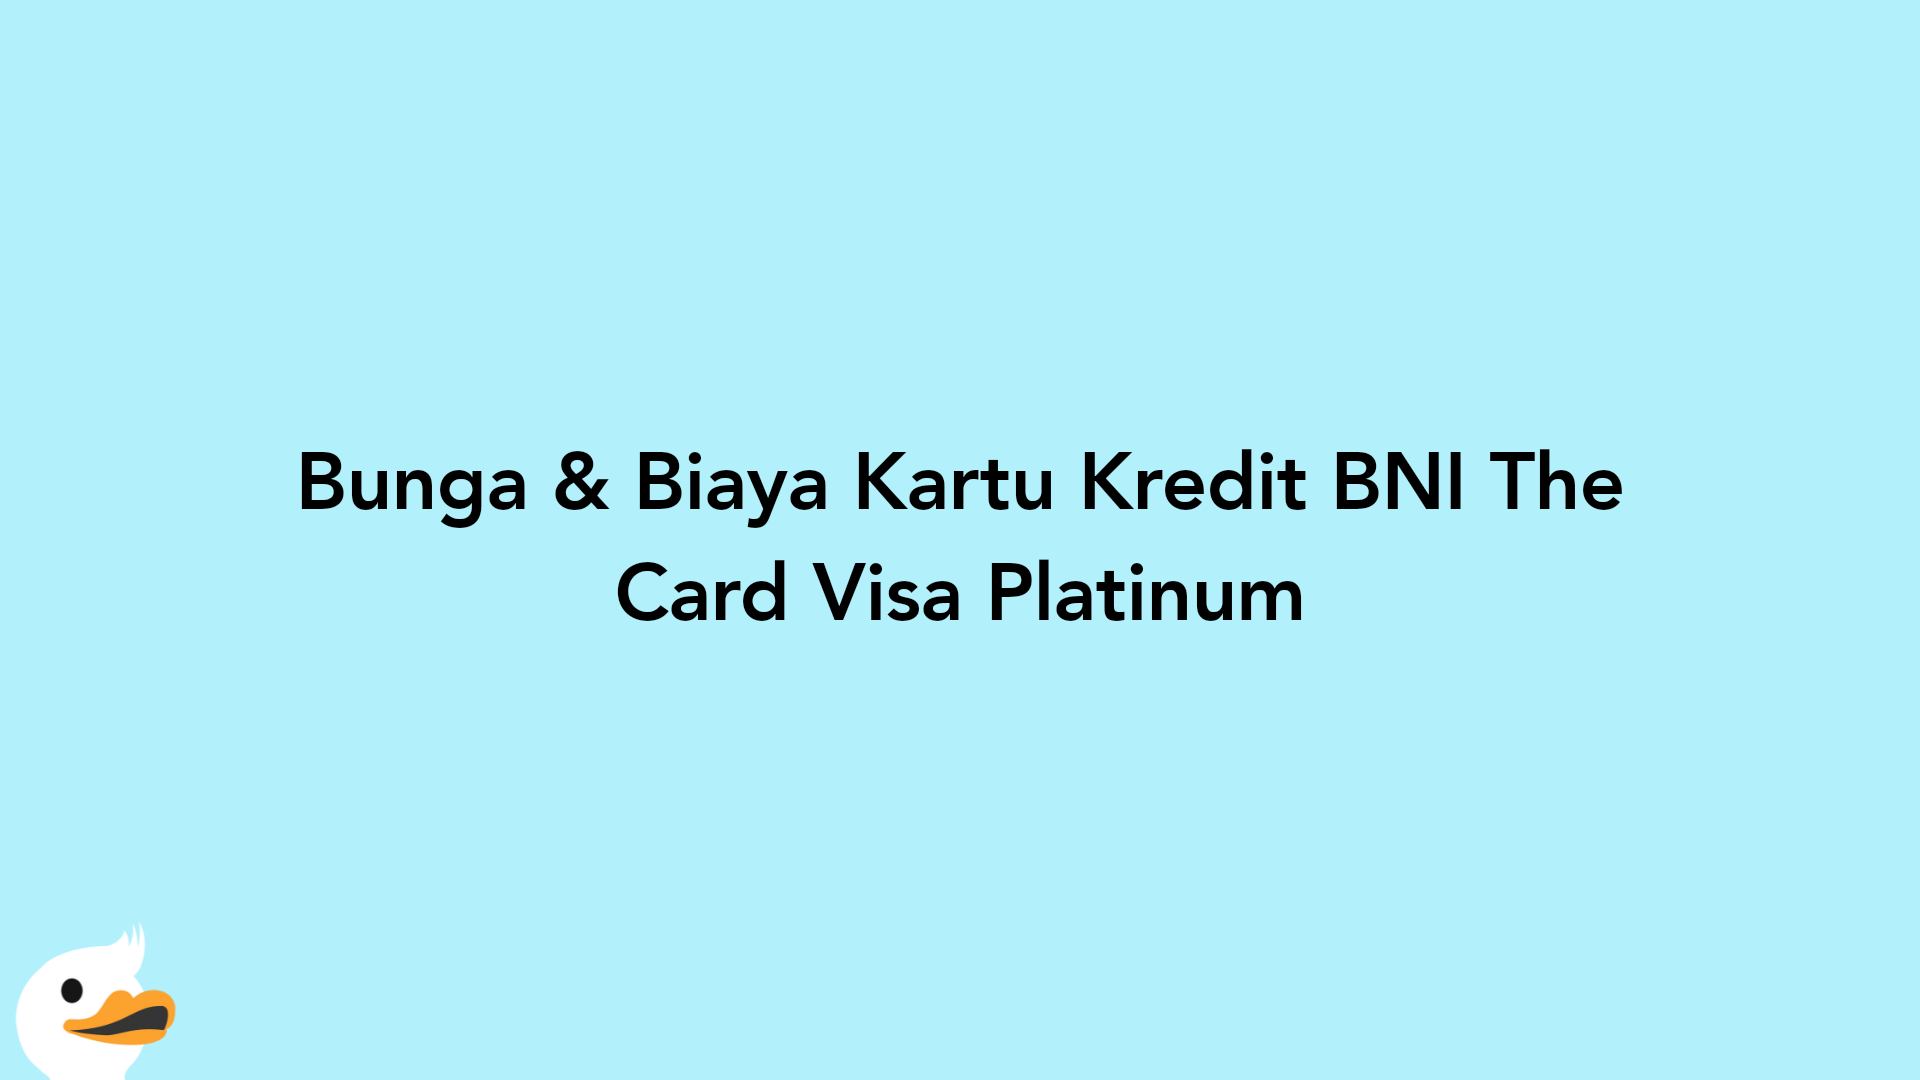 Bunga & Biaya Kartu Kredit BNI The Card Visa Platinum